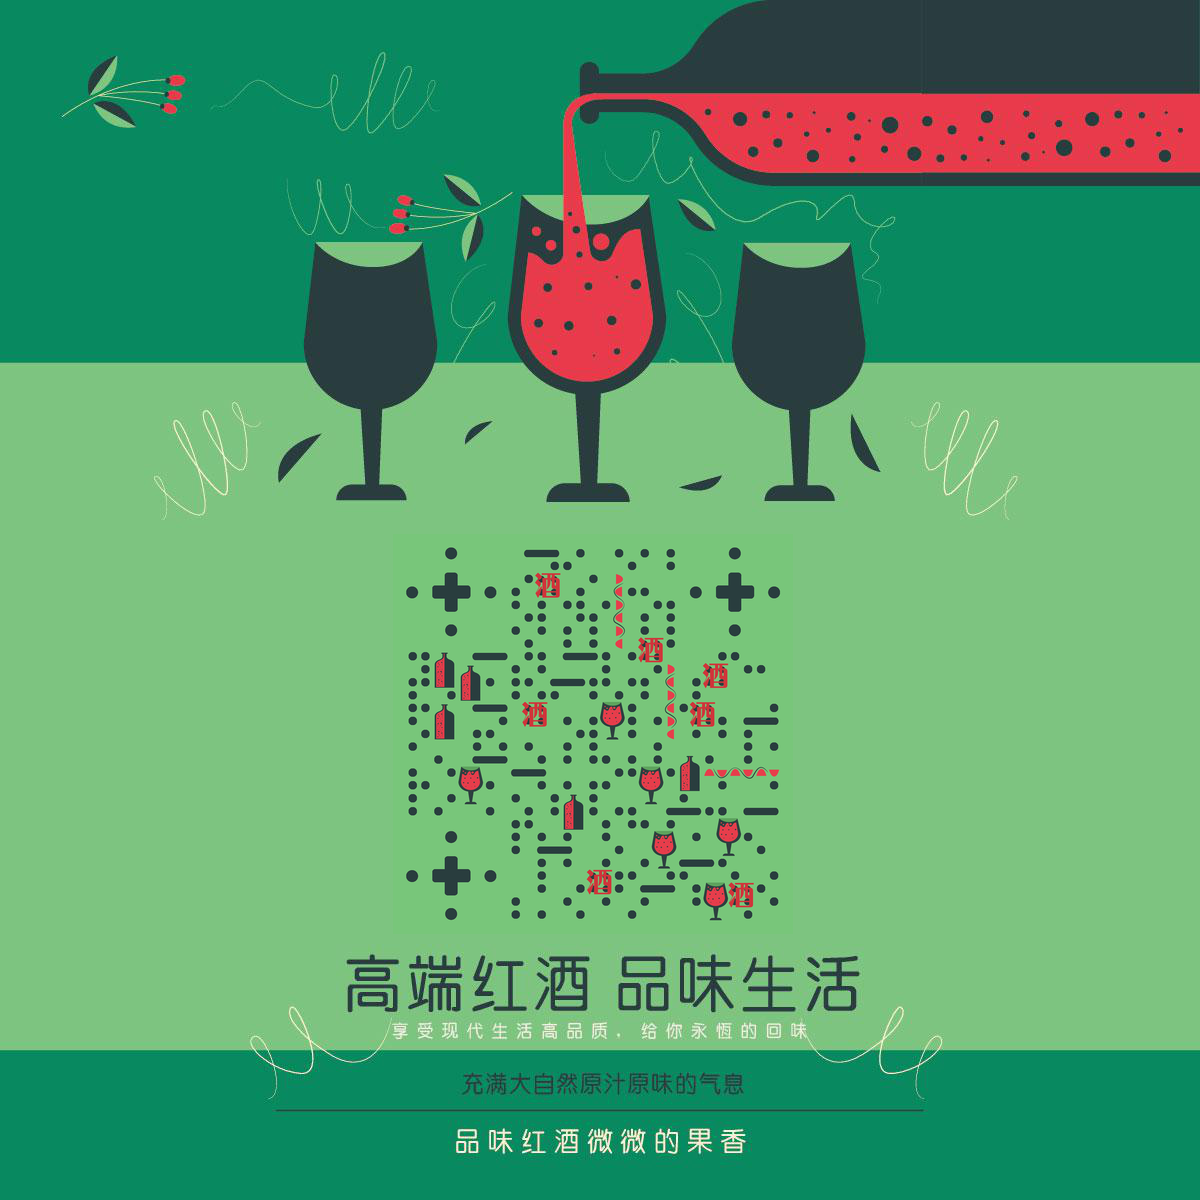 高端红酒品味生活自然气息二维码生成器-平面静态-正方形码